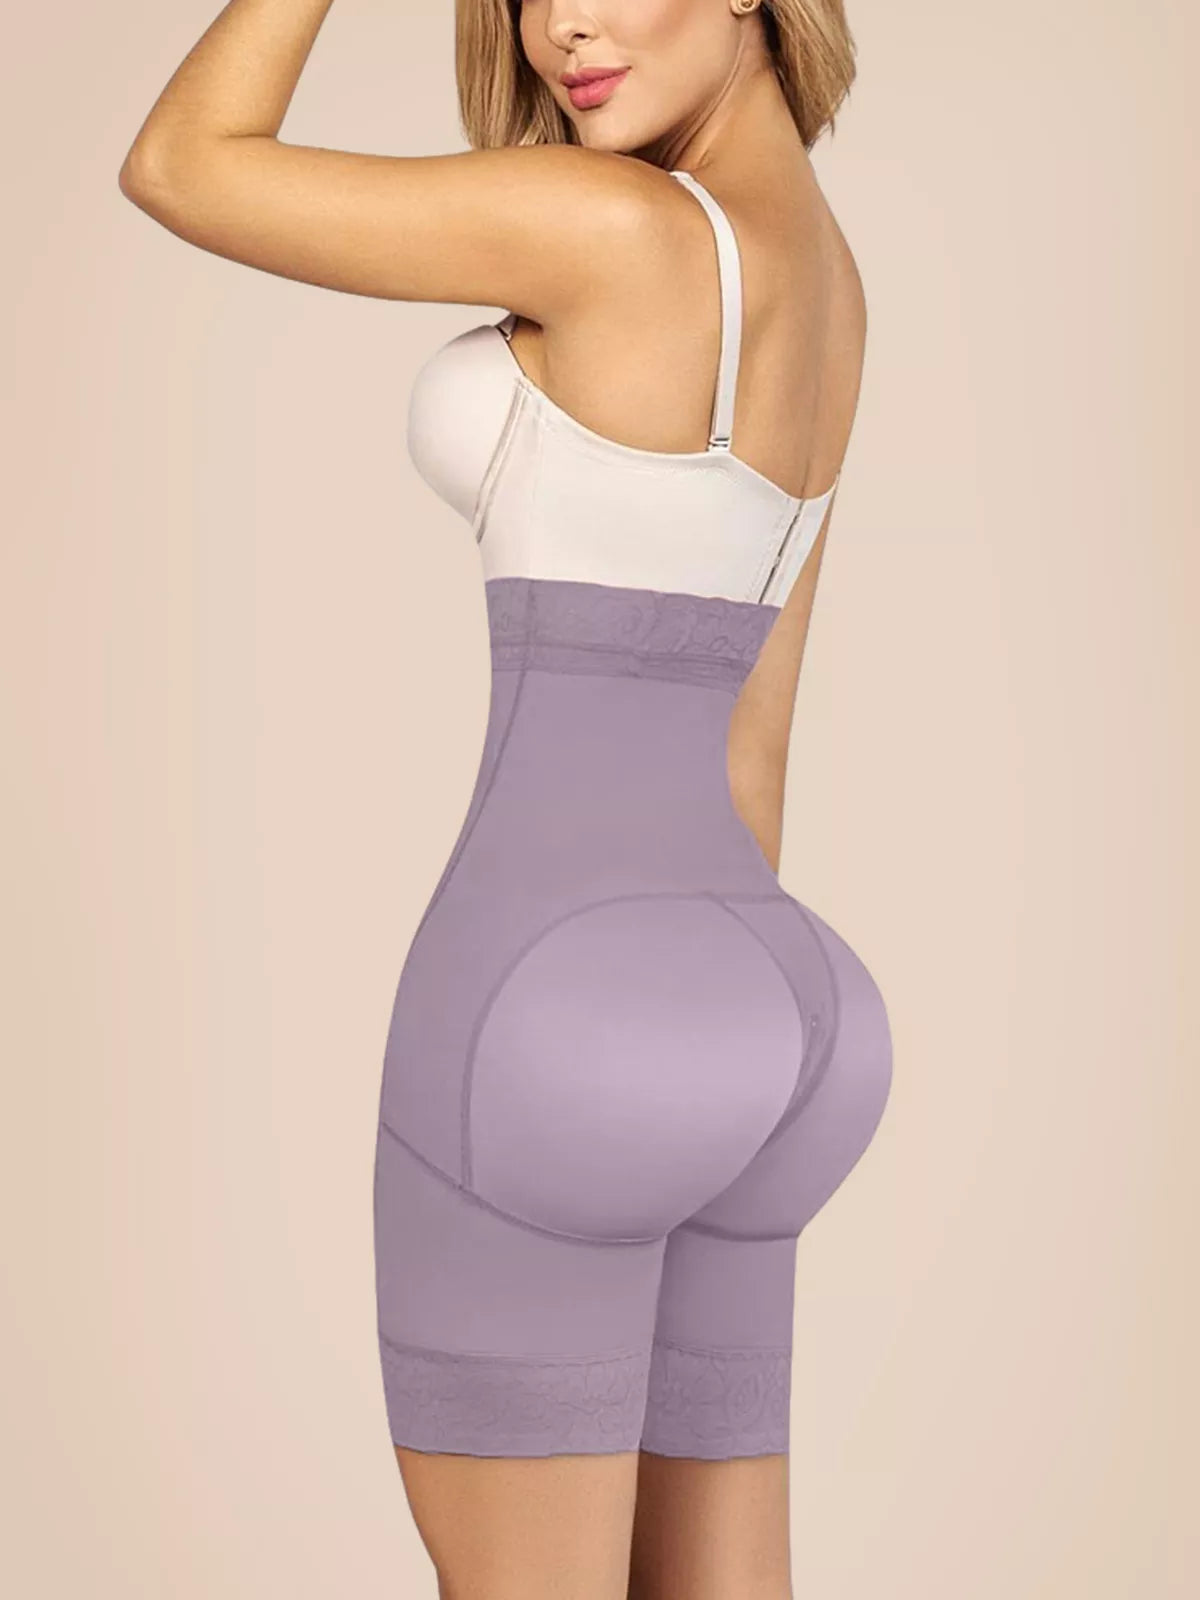 Women Butt Lifter High Waist Hip Enhancer Pads Underwear Shapewear Lace Padded Control Panties